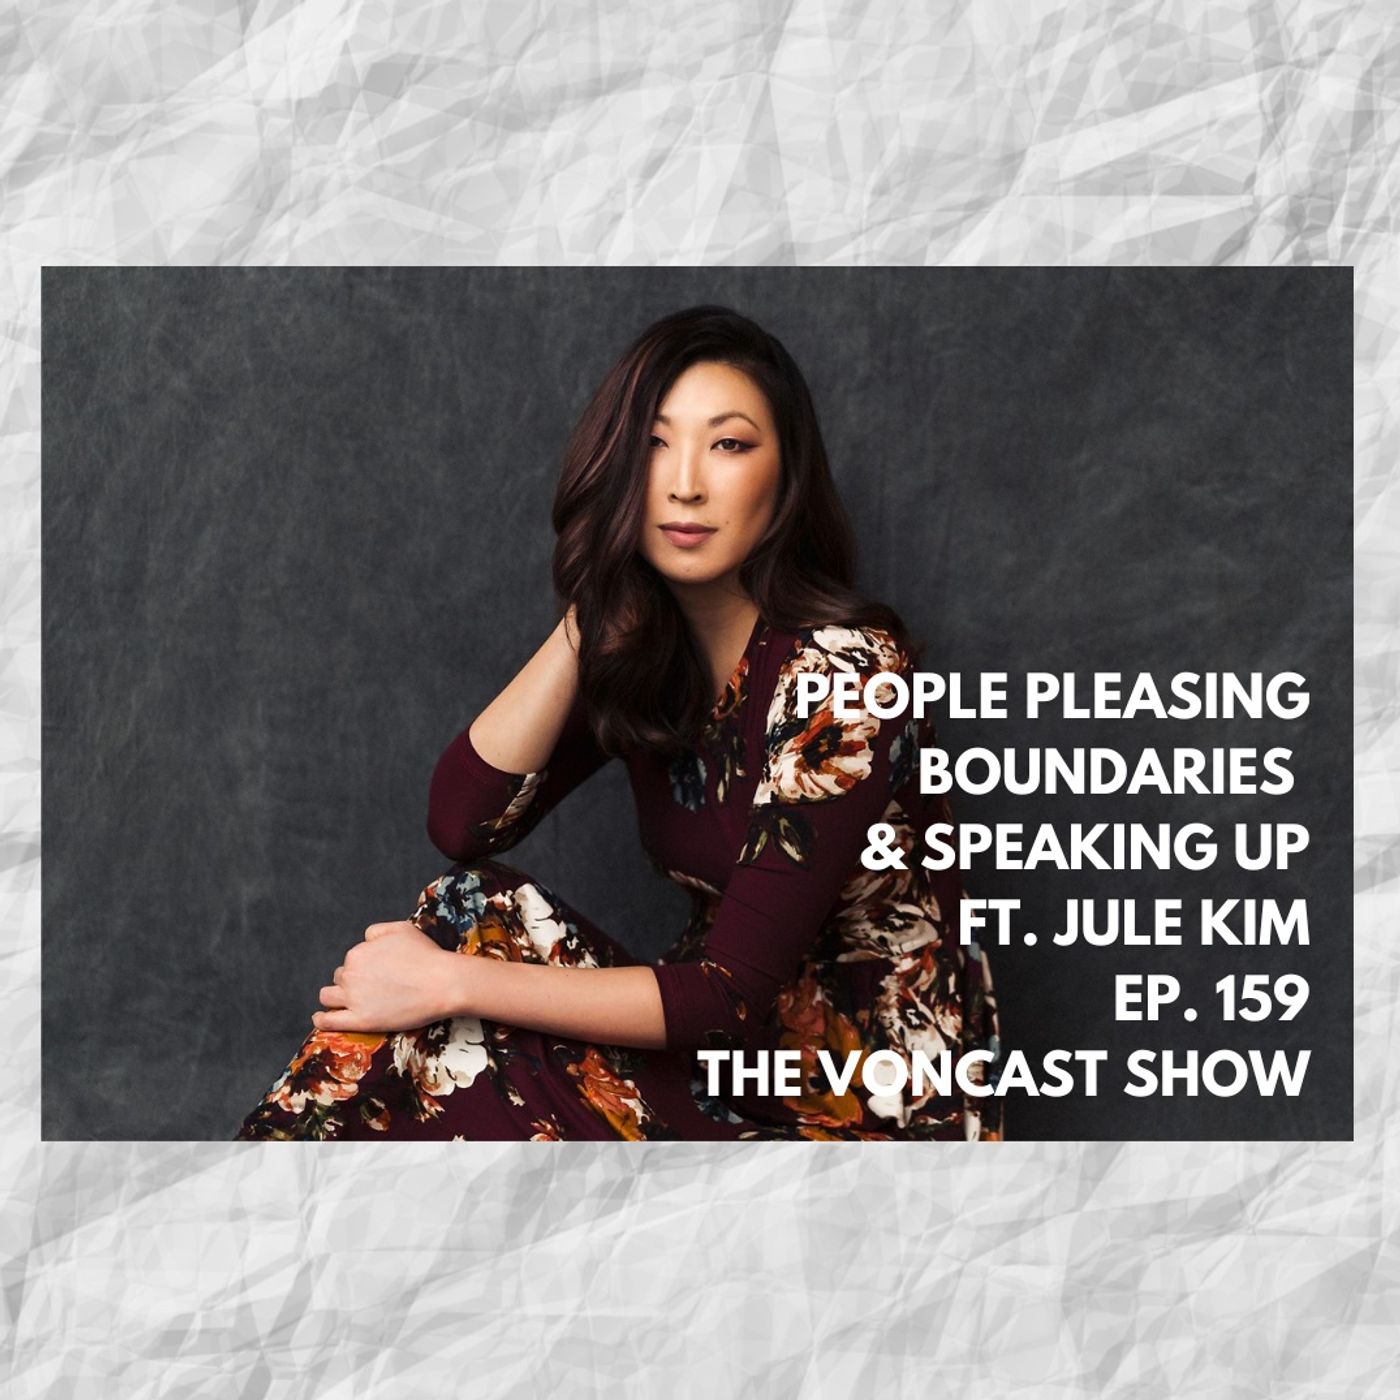 EP. 159 People Pleasing, Boundaries & Speaking Up ft. Jule Kim